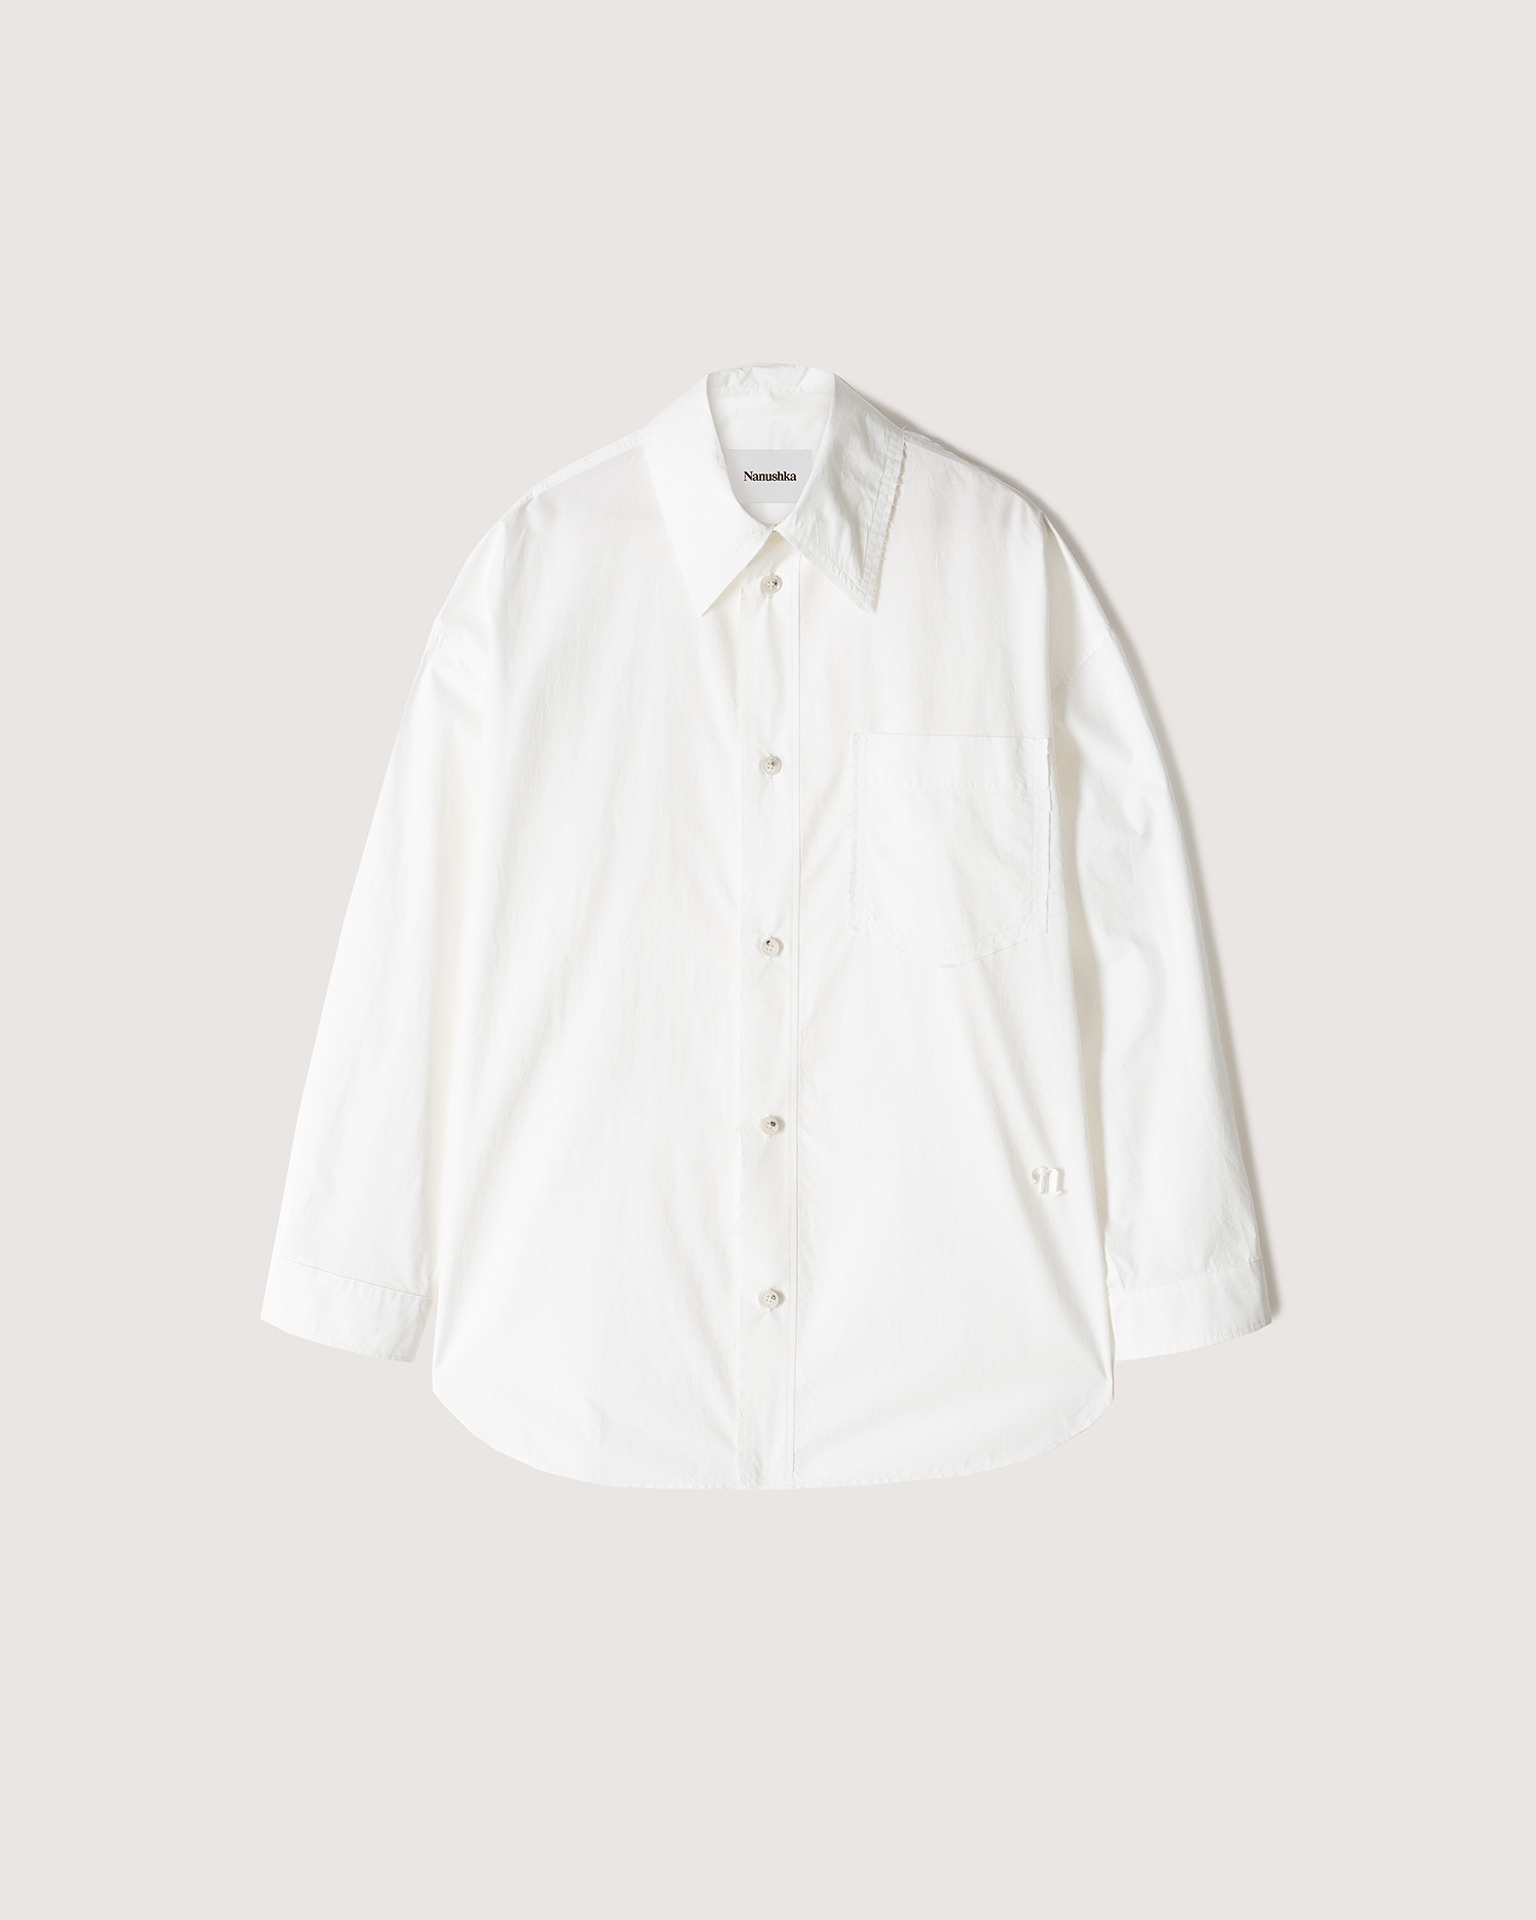 MARTINO - Poplin shirt - White - 1